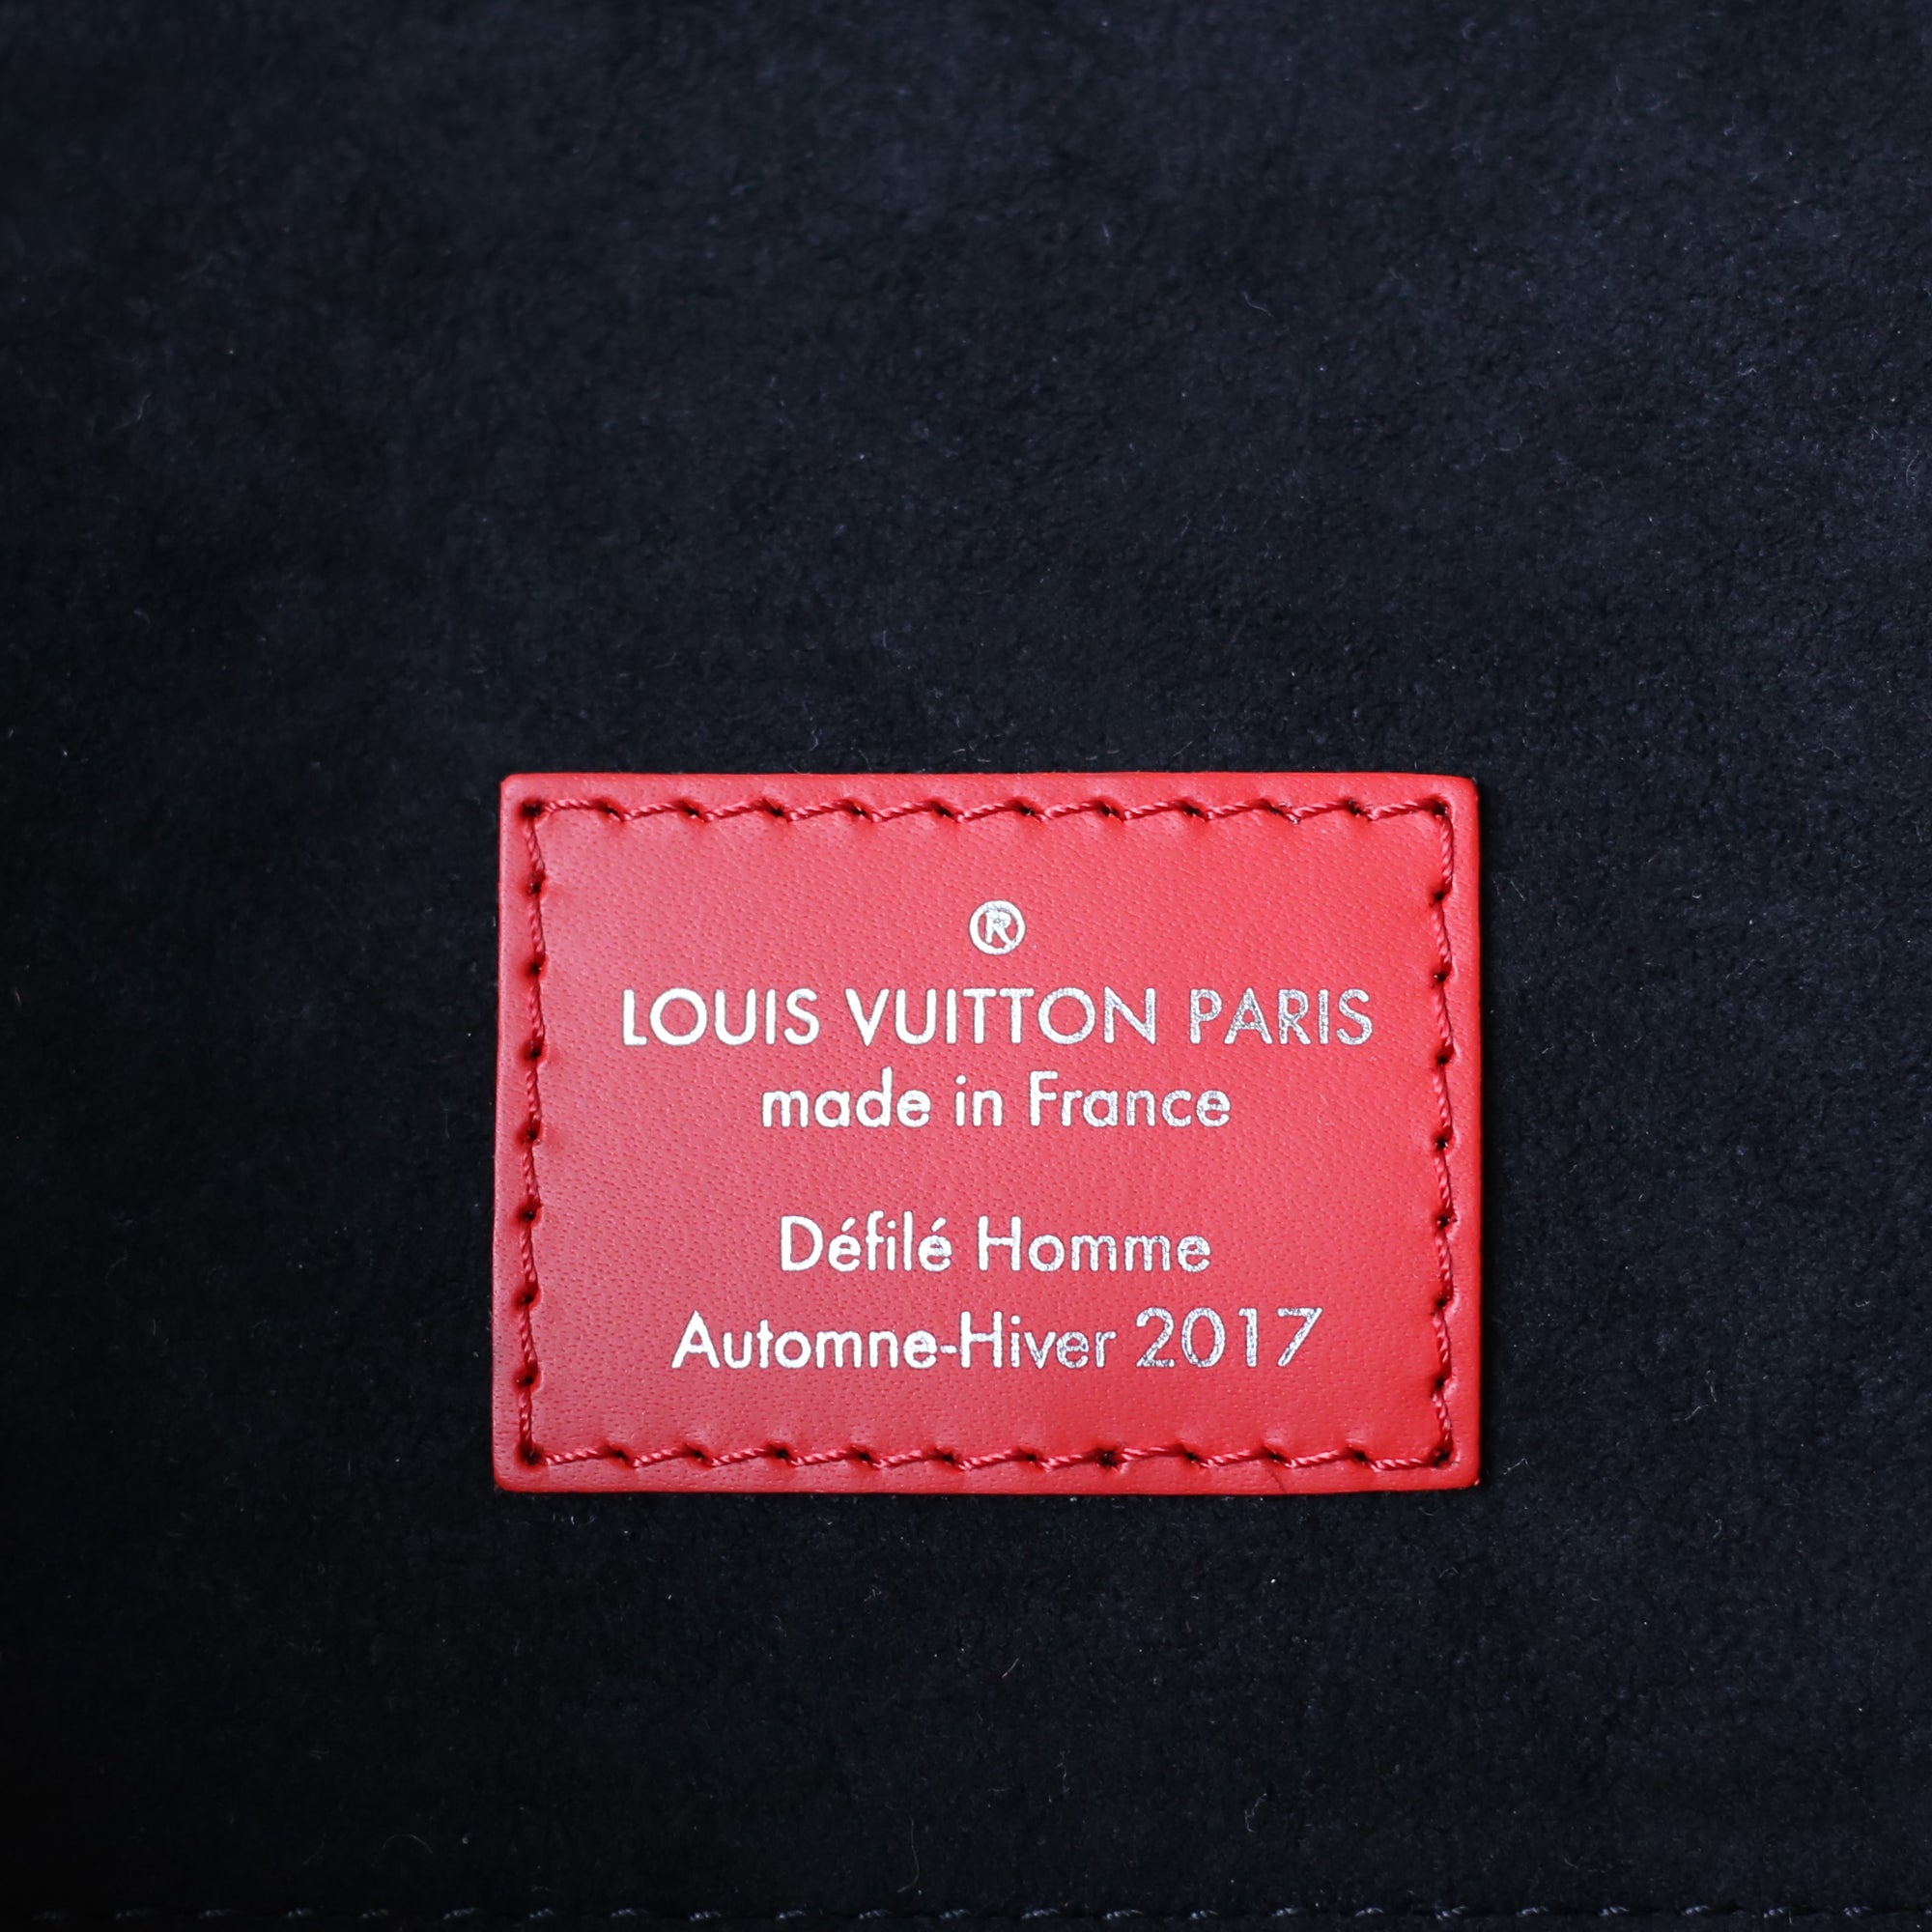 Louis Vuitton x Supreme Christopher Backpack PM – Subt!e